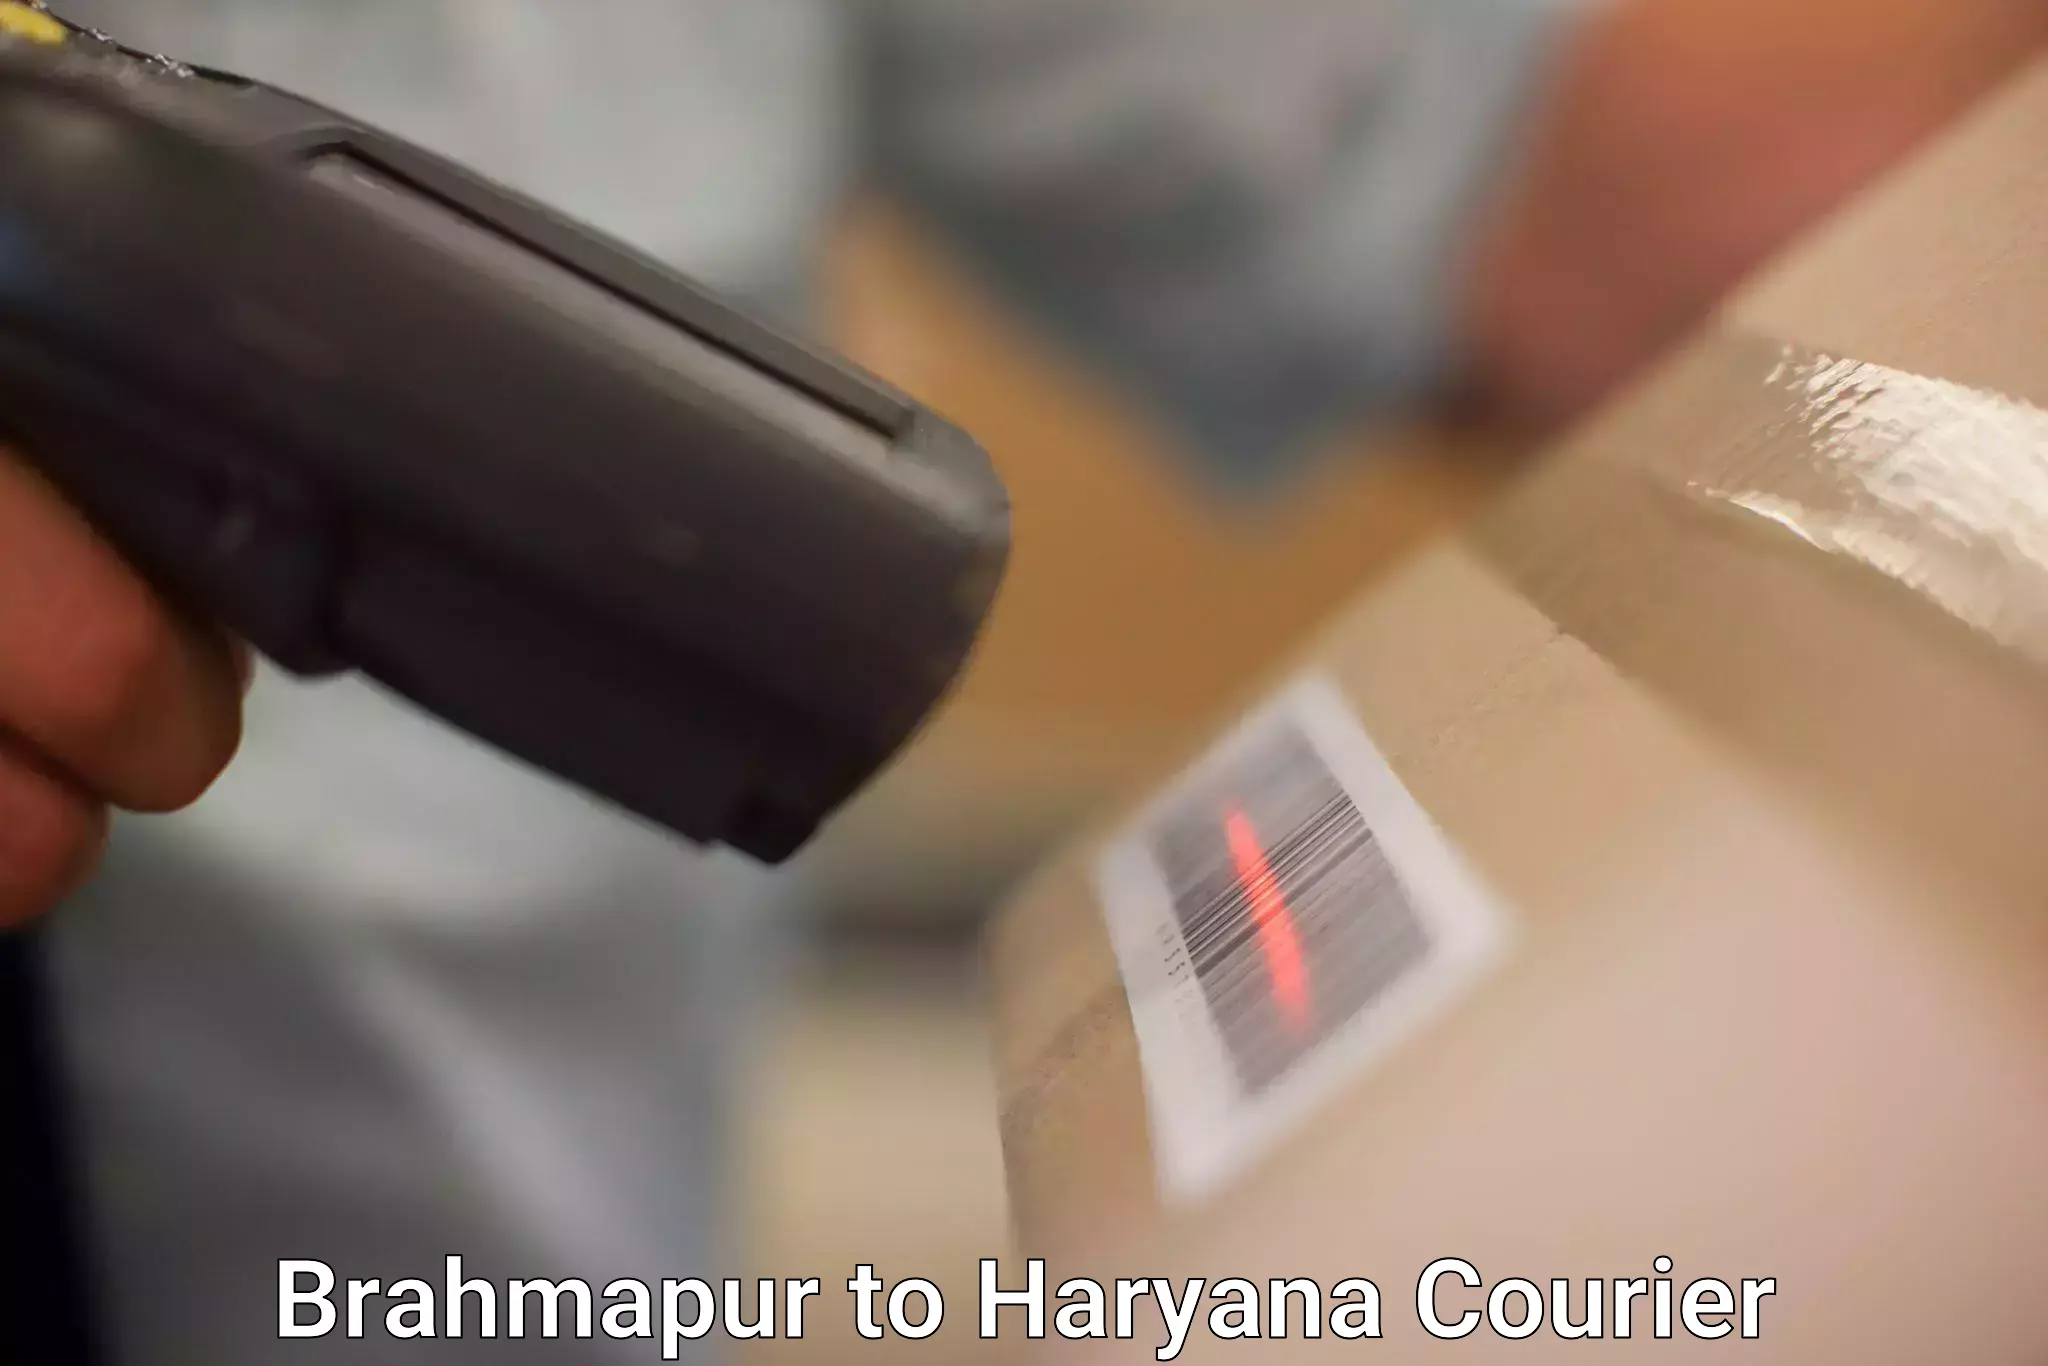 Smart shipping technology in Brahmapur to Jhajjar